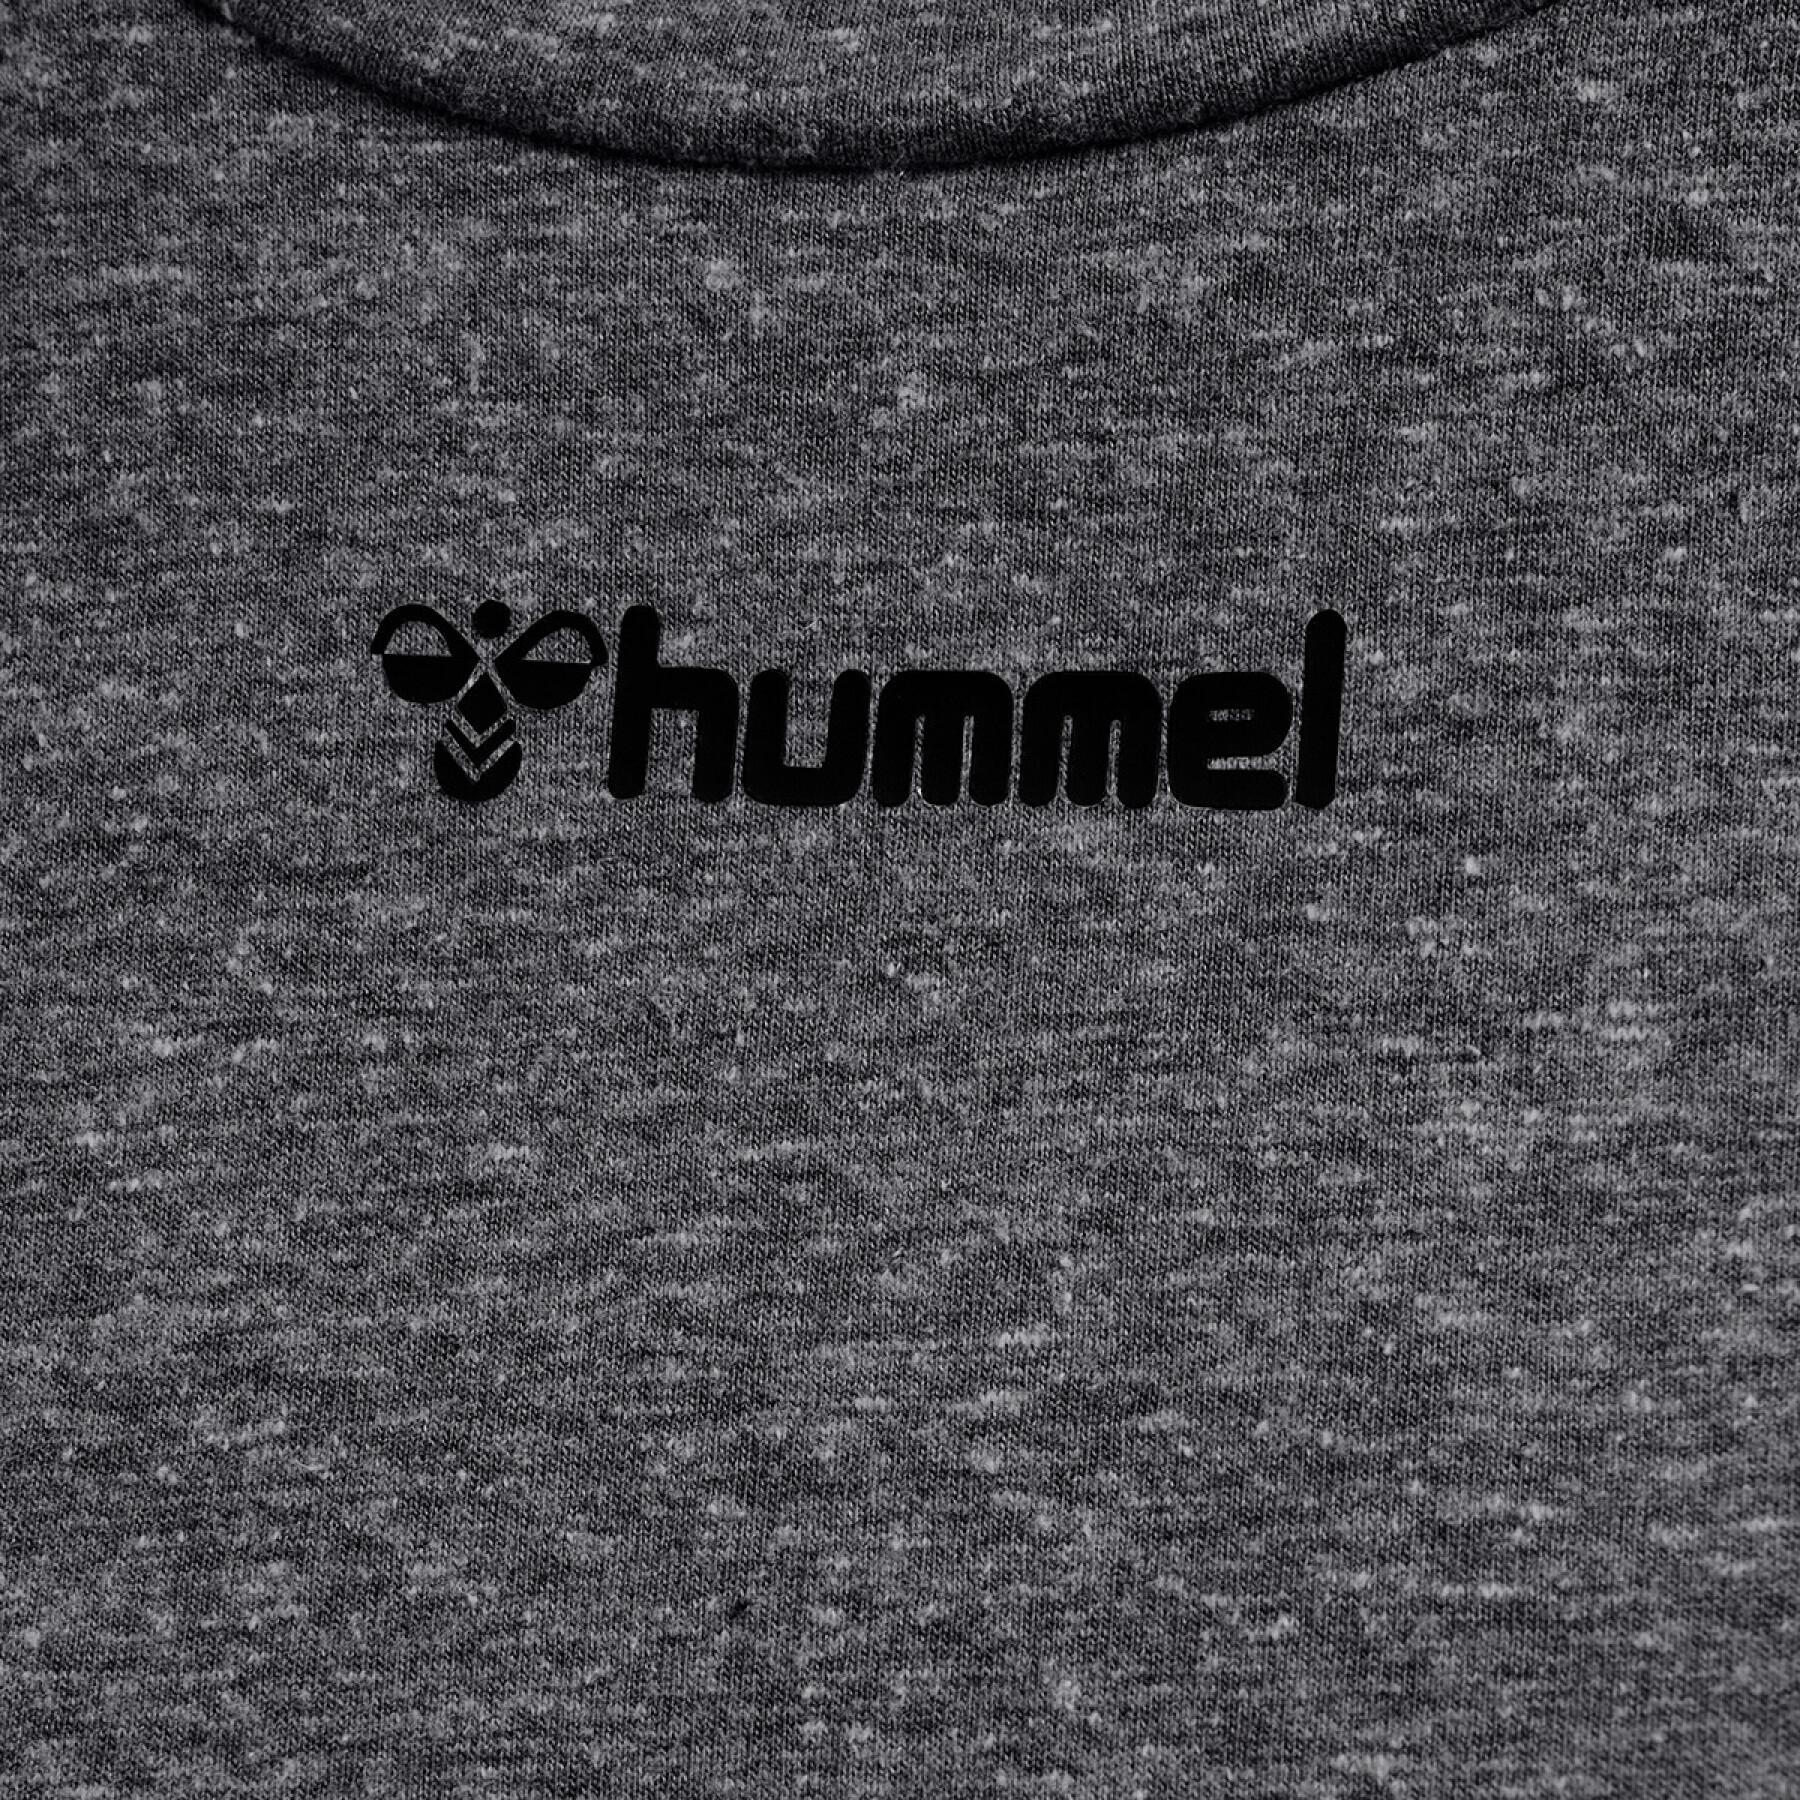 T-shirt för kvinnor Hummel hmlzandra